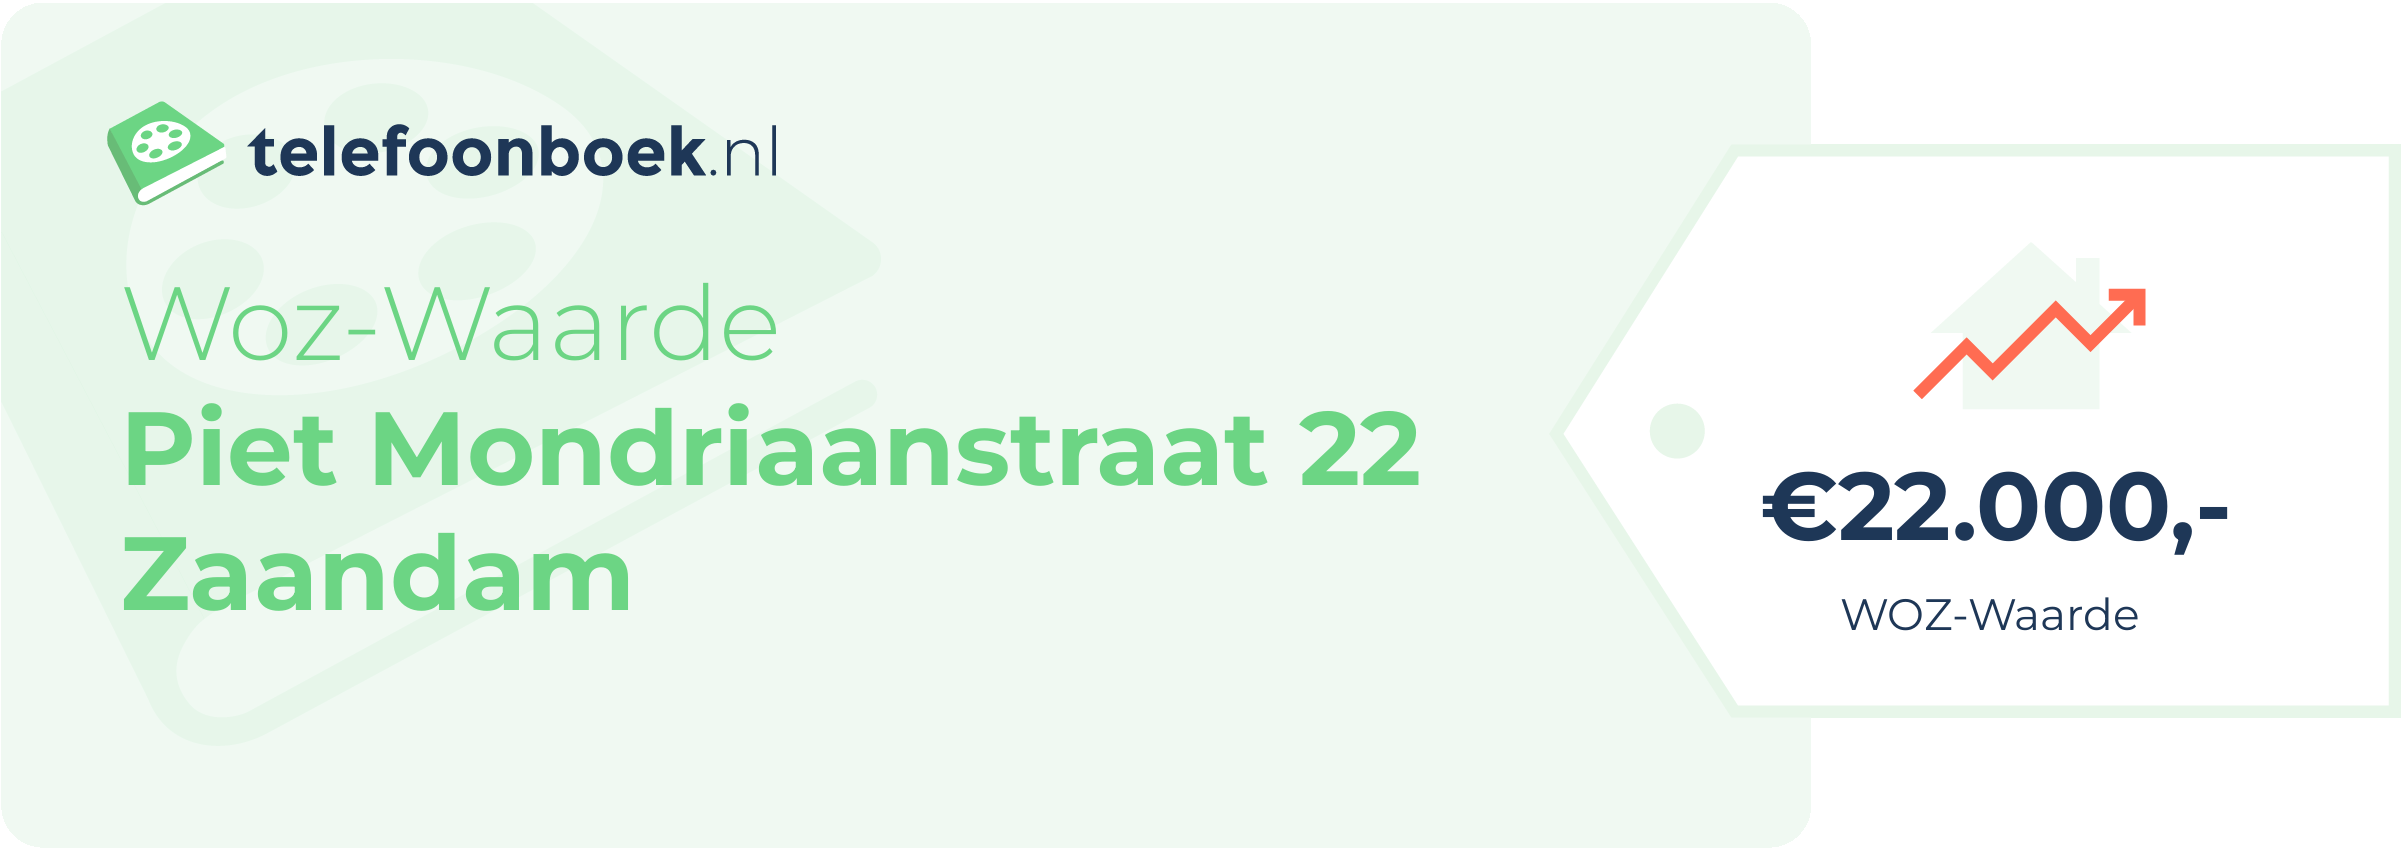 WOZ-waarde Piet Mondriaanstraat 22 Zaandam